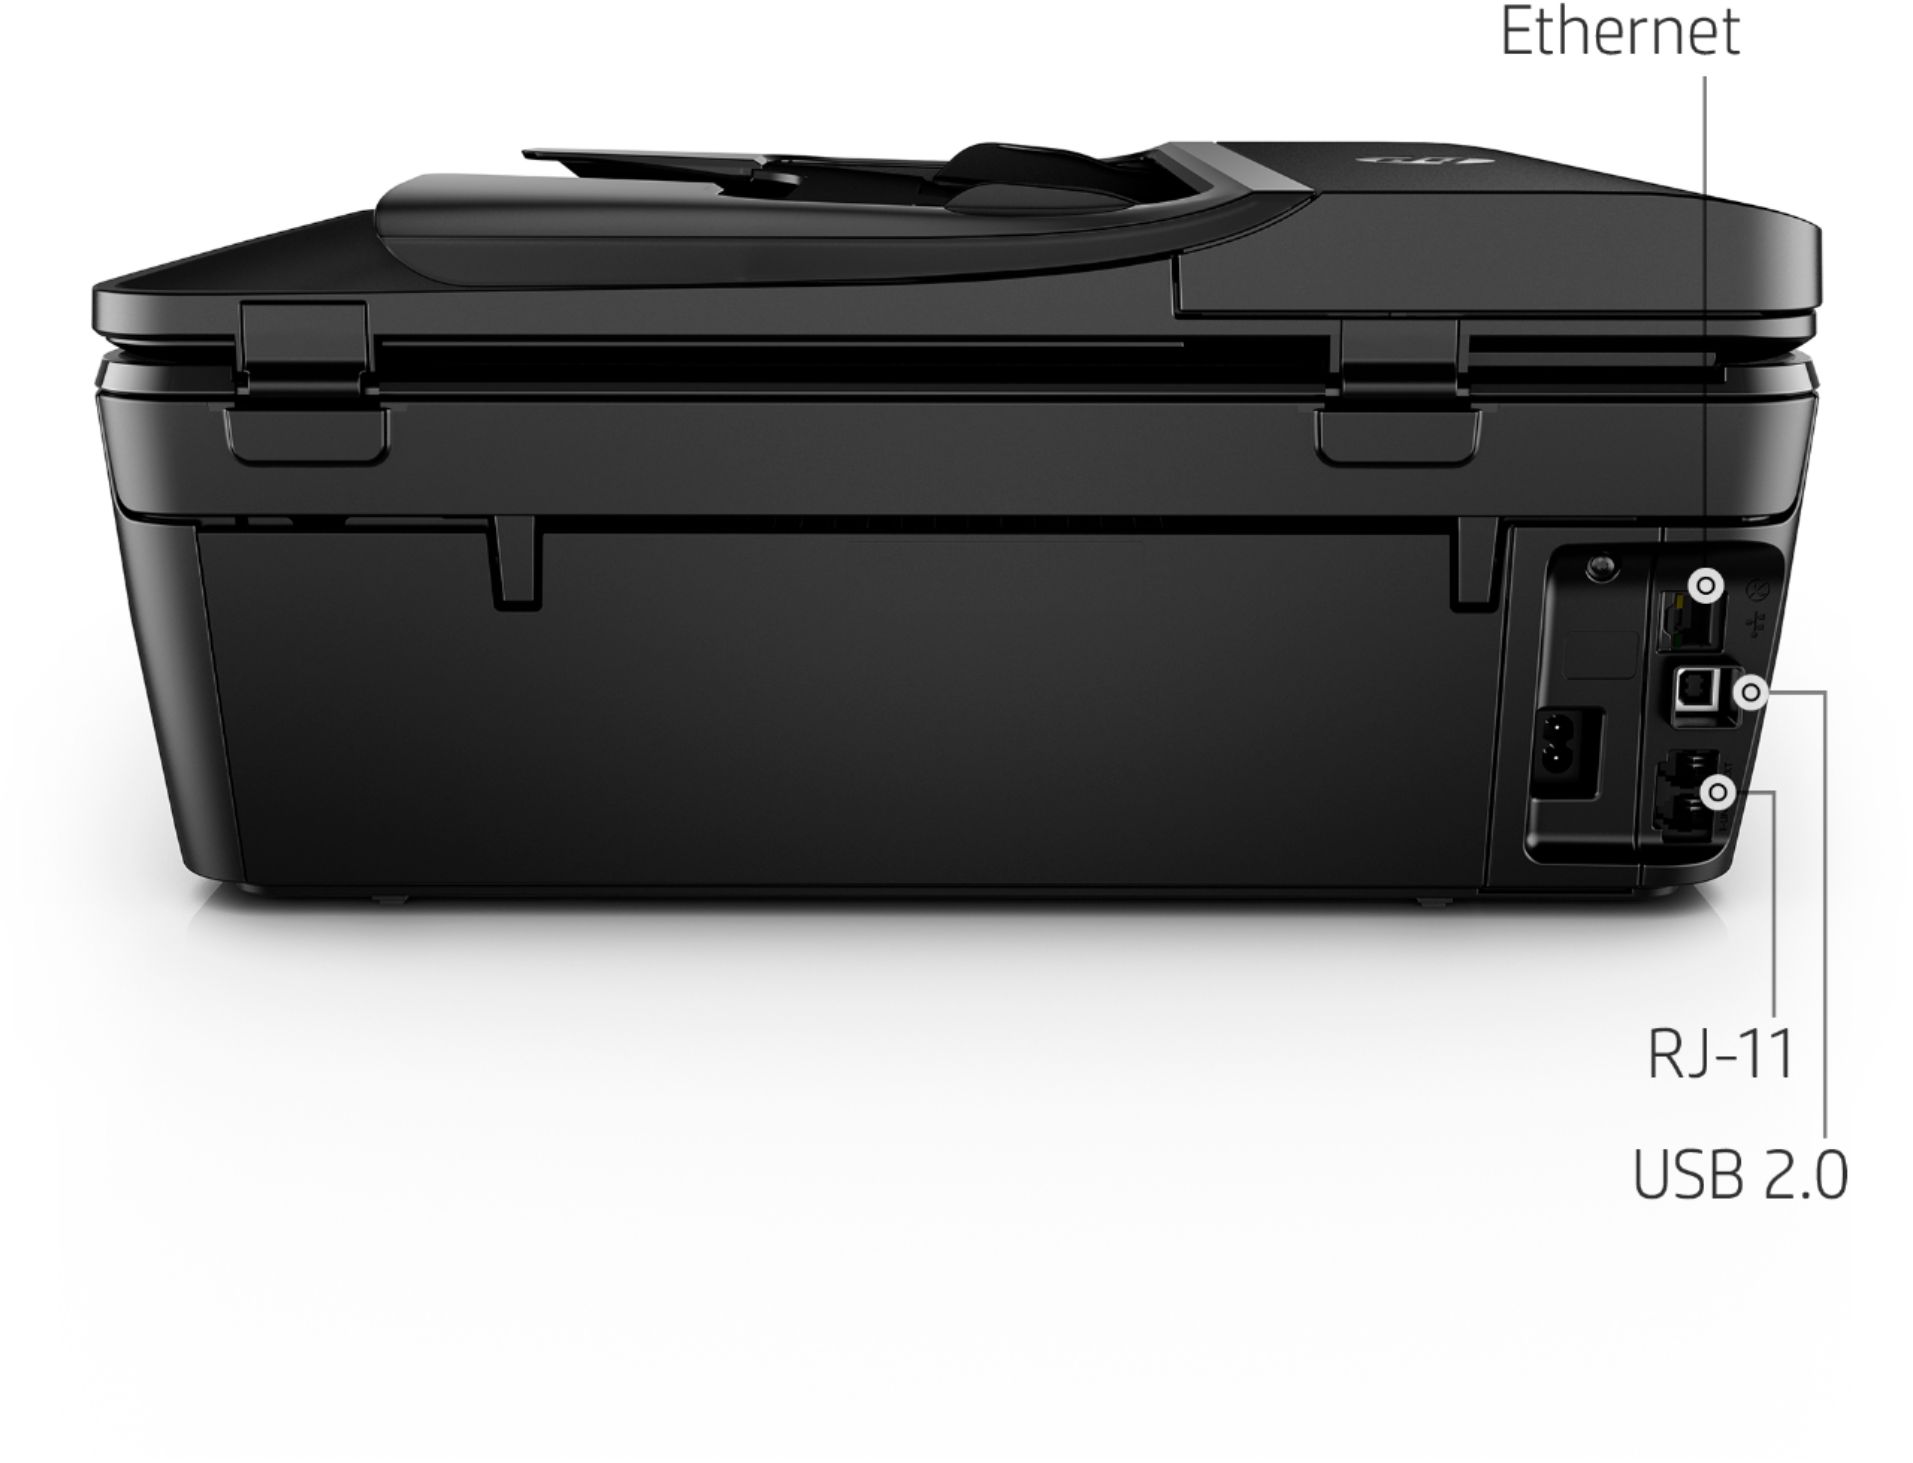 HP Envy Photo 7830 Impresora multifunción inalámbrica Color Negro Tinta, Wi-Fi, copiar, escanear, alimentador automático de Documentos, 1200 x 1200 PPP, Incluido 4 Meses de HP Instant Ink